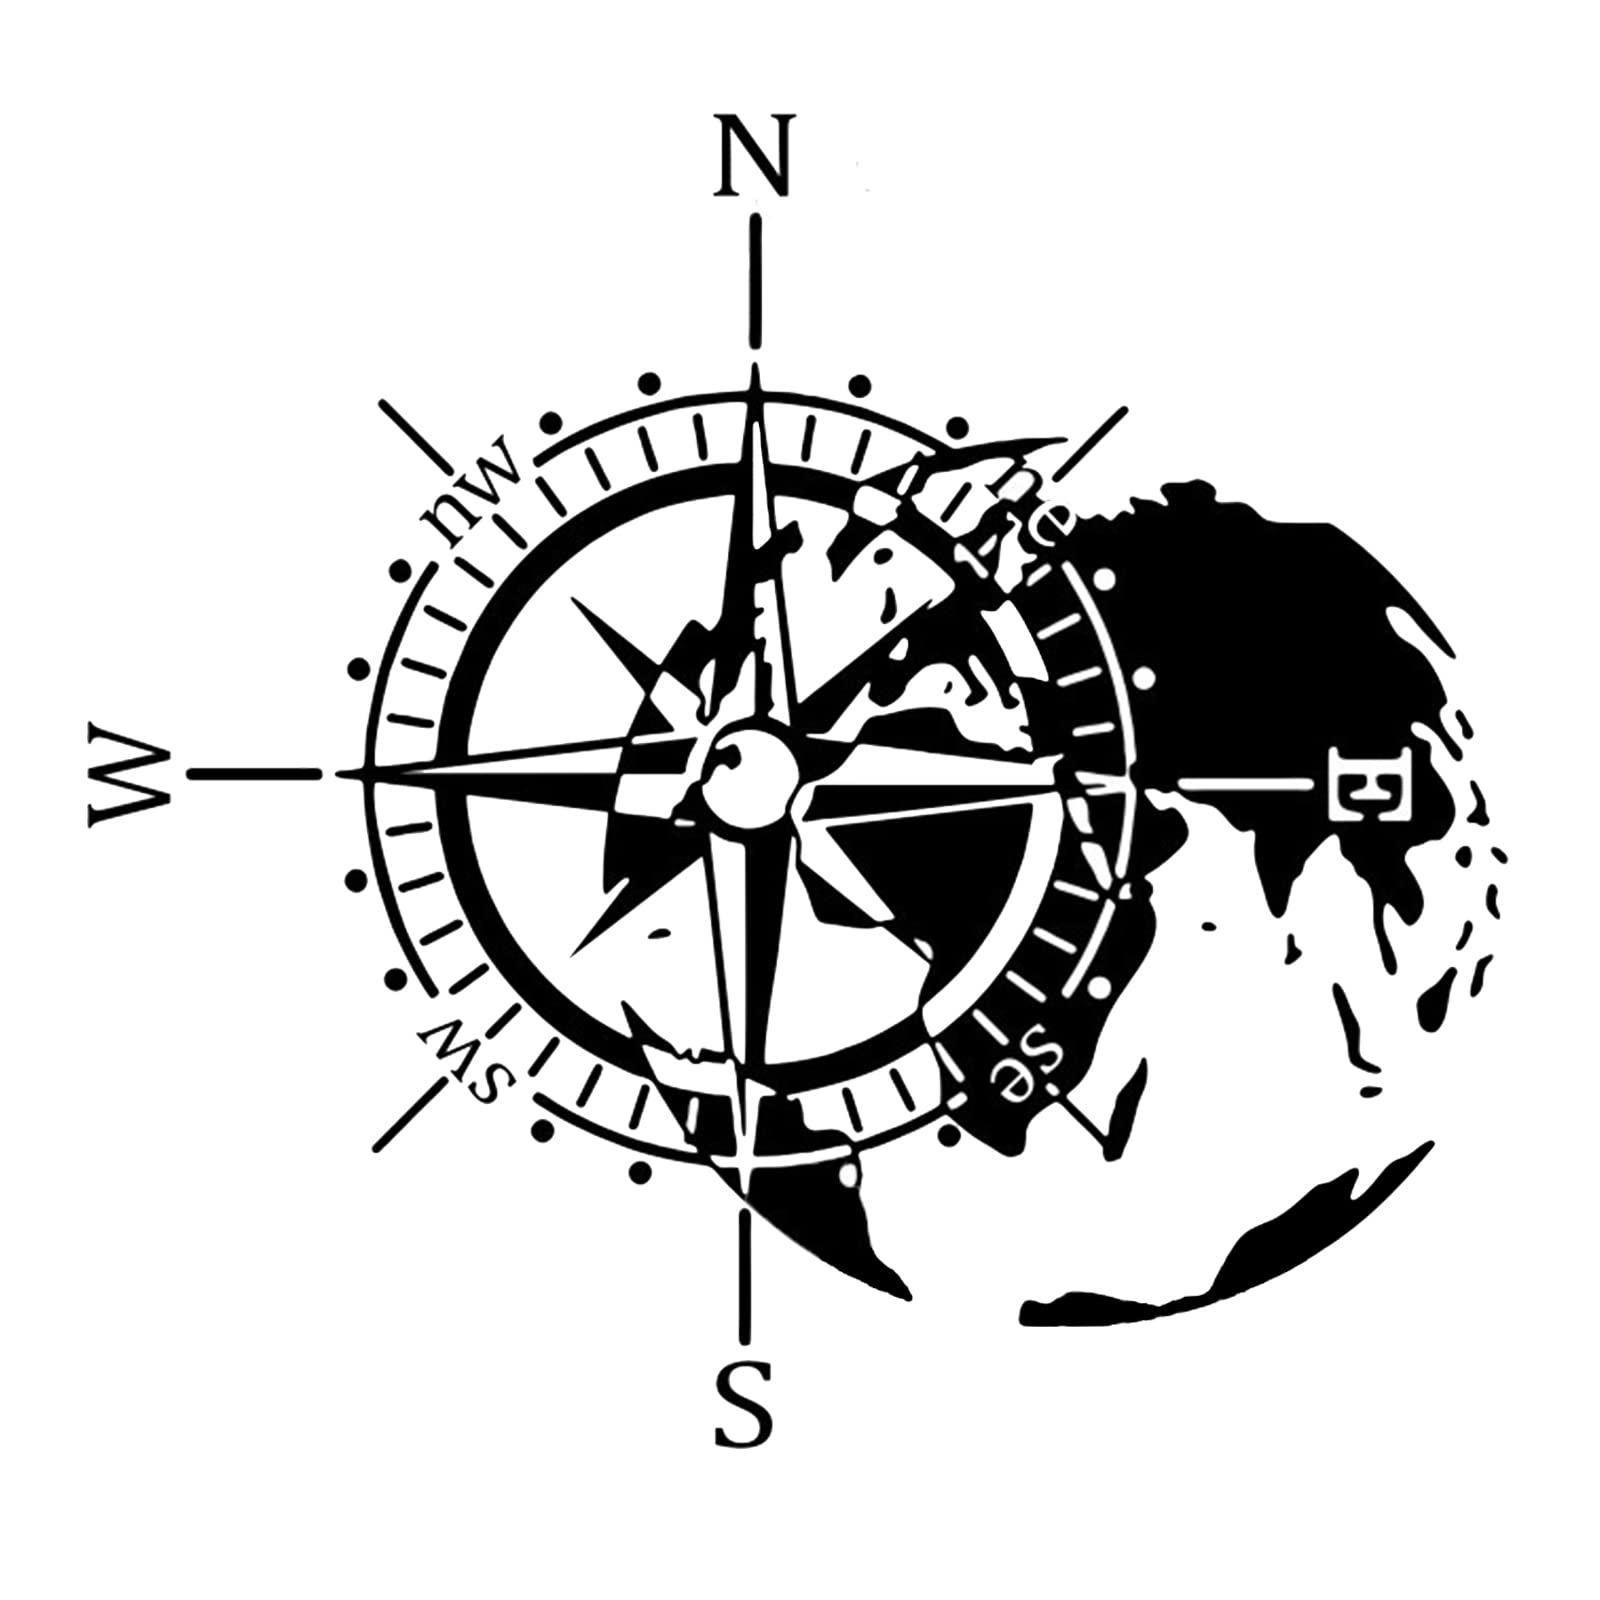 Vastsea Aufkleber Kompass, Kompass Aufkleber, Autoaufkleber Kompass, für Auto Motorrad Wohnwagen Wohnmobil Kfz Zubehör (Schwarz, 40 x 36cm) von Vastsea